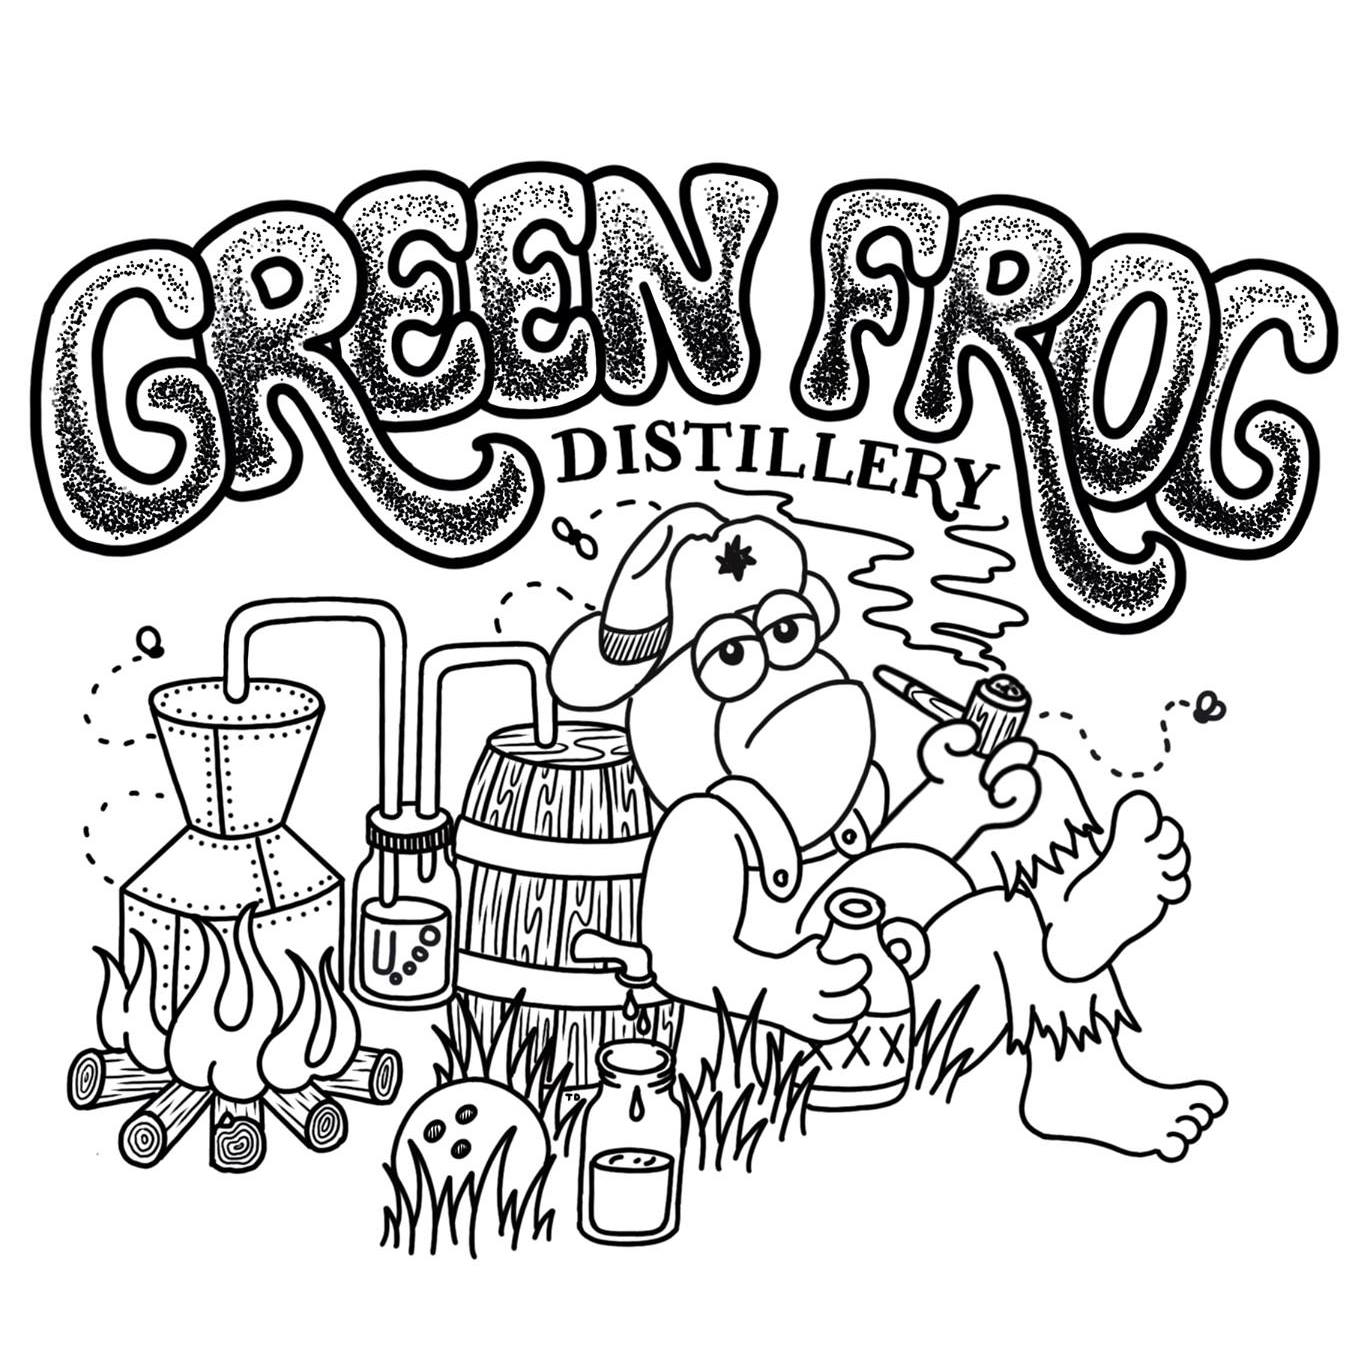 Green Frog Distillery